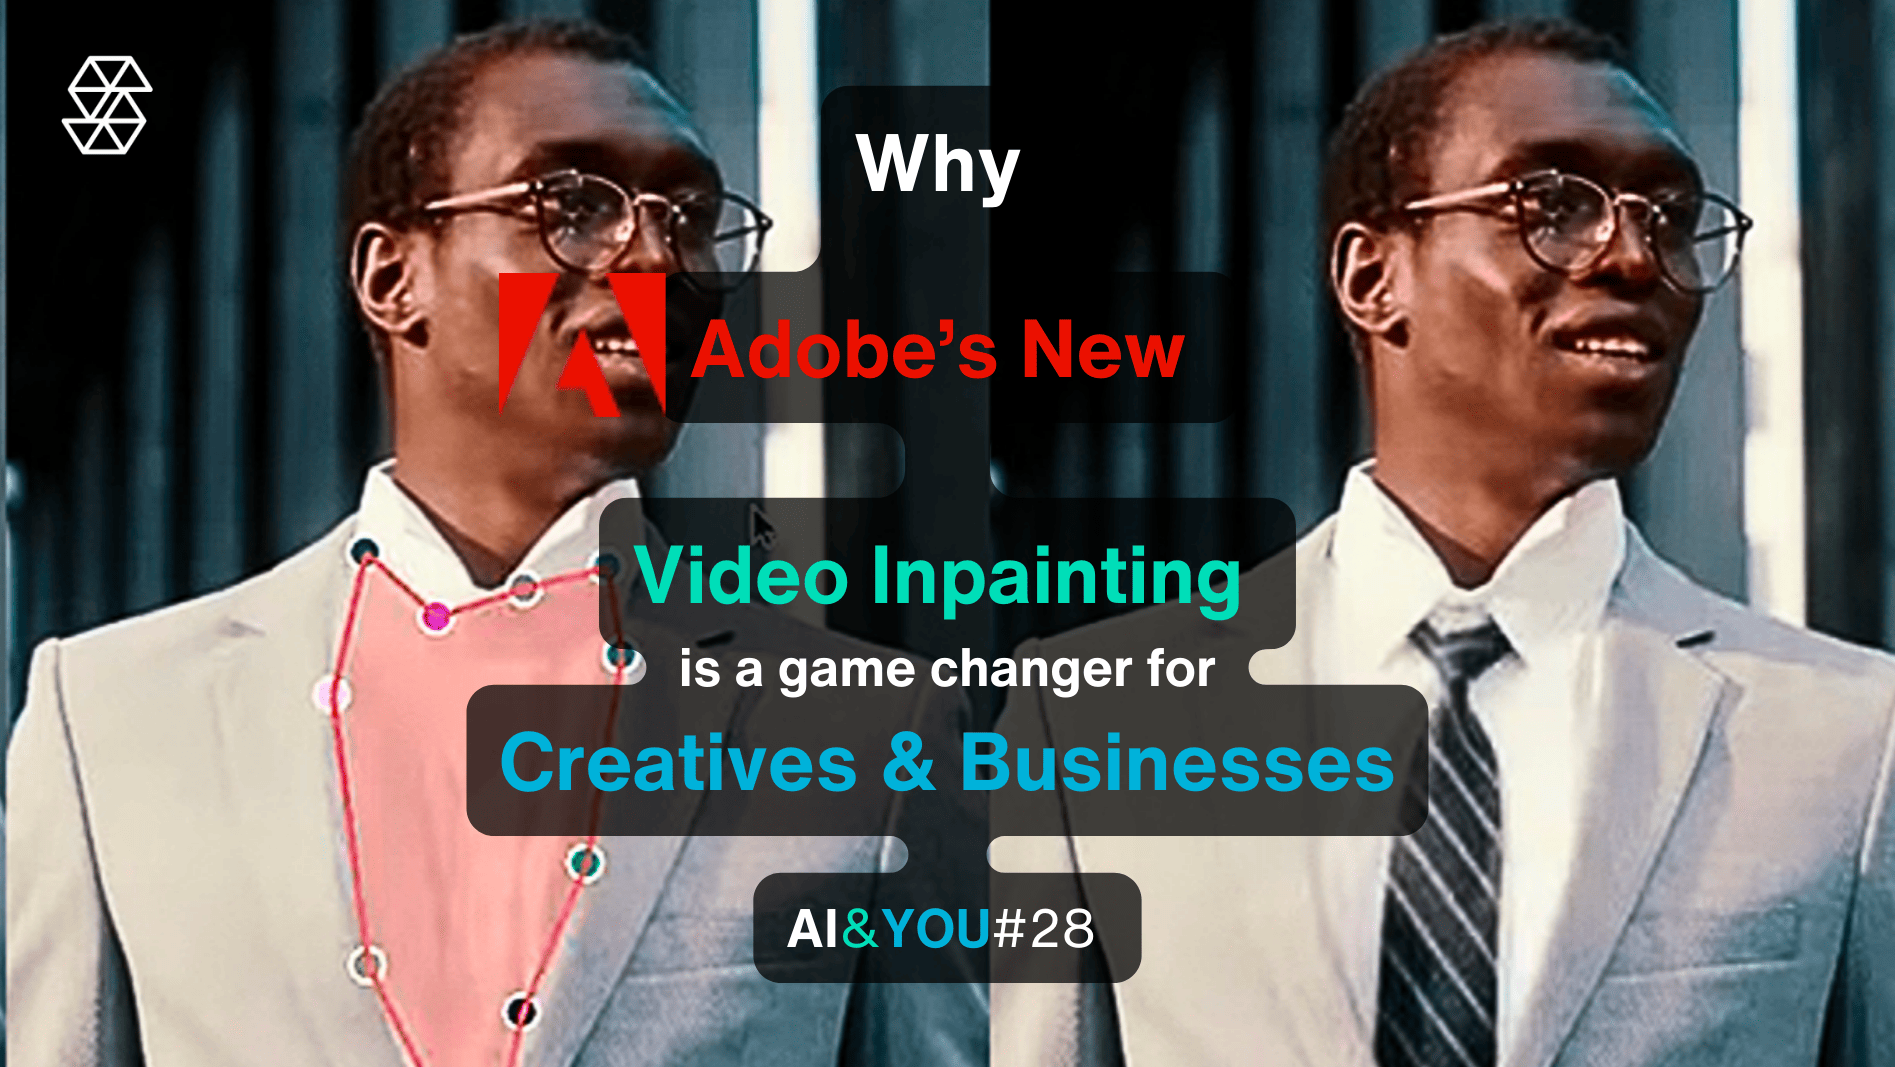 AI&YOU#28: "Project Fast Fill" de Adobe revoluciona el pintado de vídeo para creadores y empresas